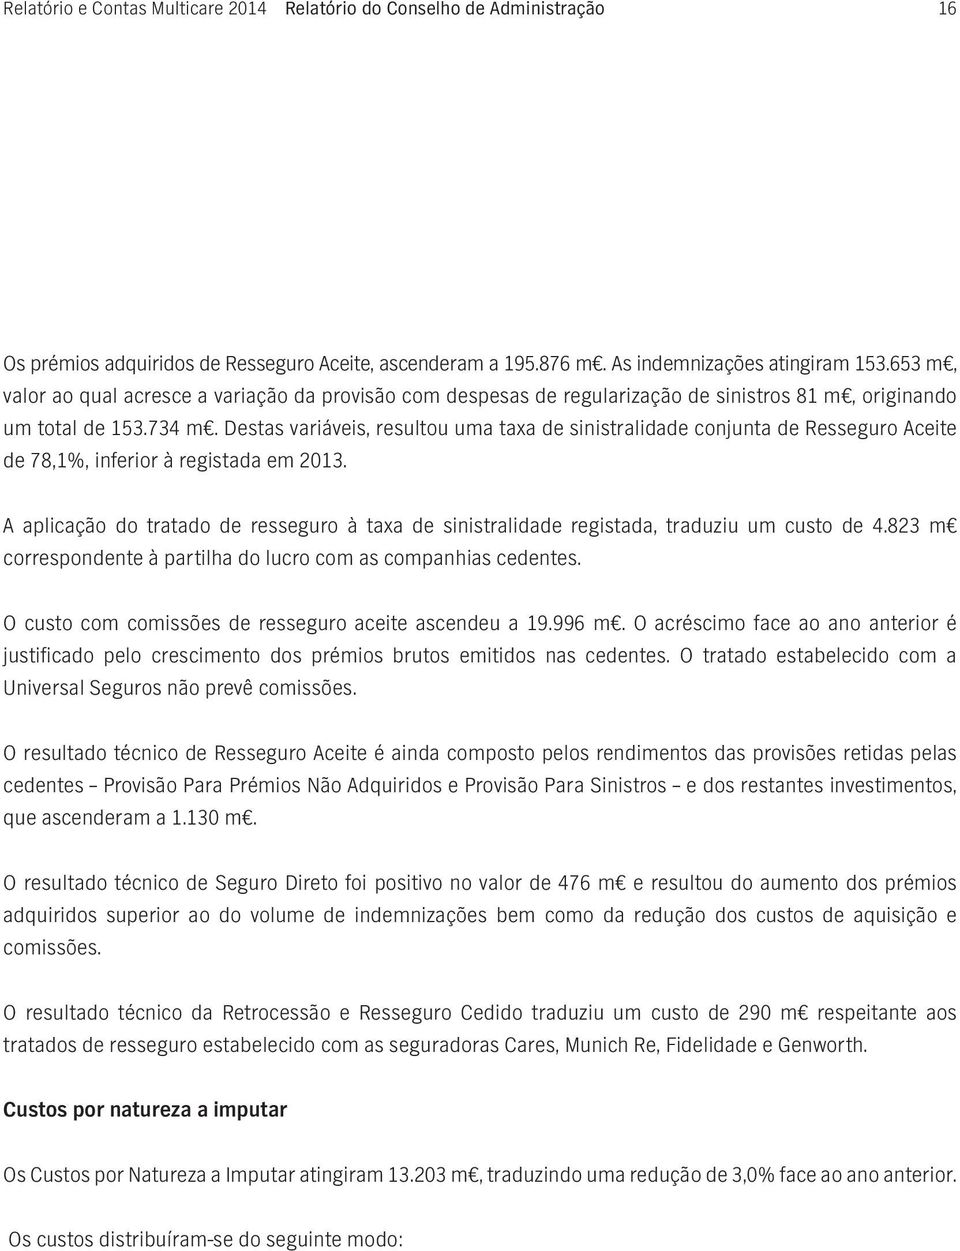 Destas variáveis, resultou uma taxa de sinistralidade conjunta de Resseguro Aceite de 78,1%, inferior à registada em 2013.